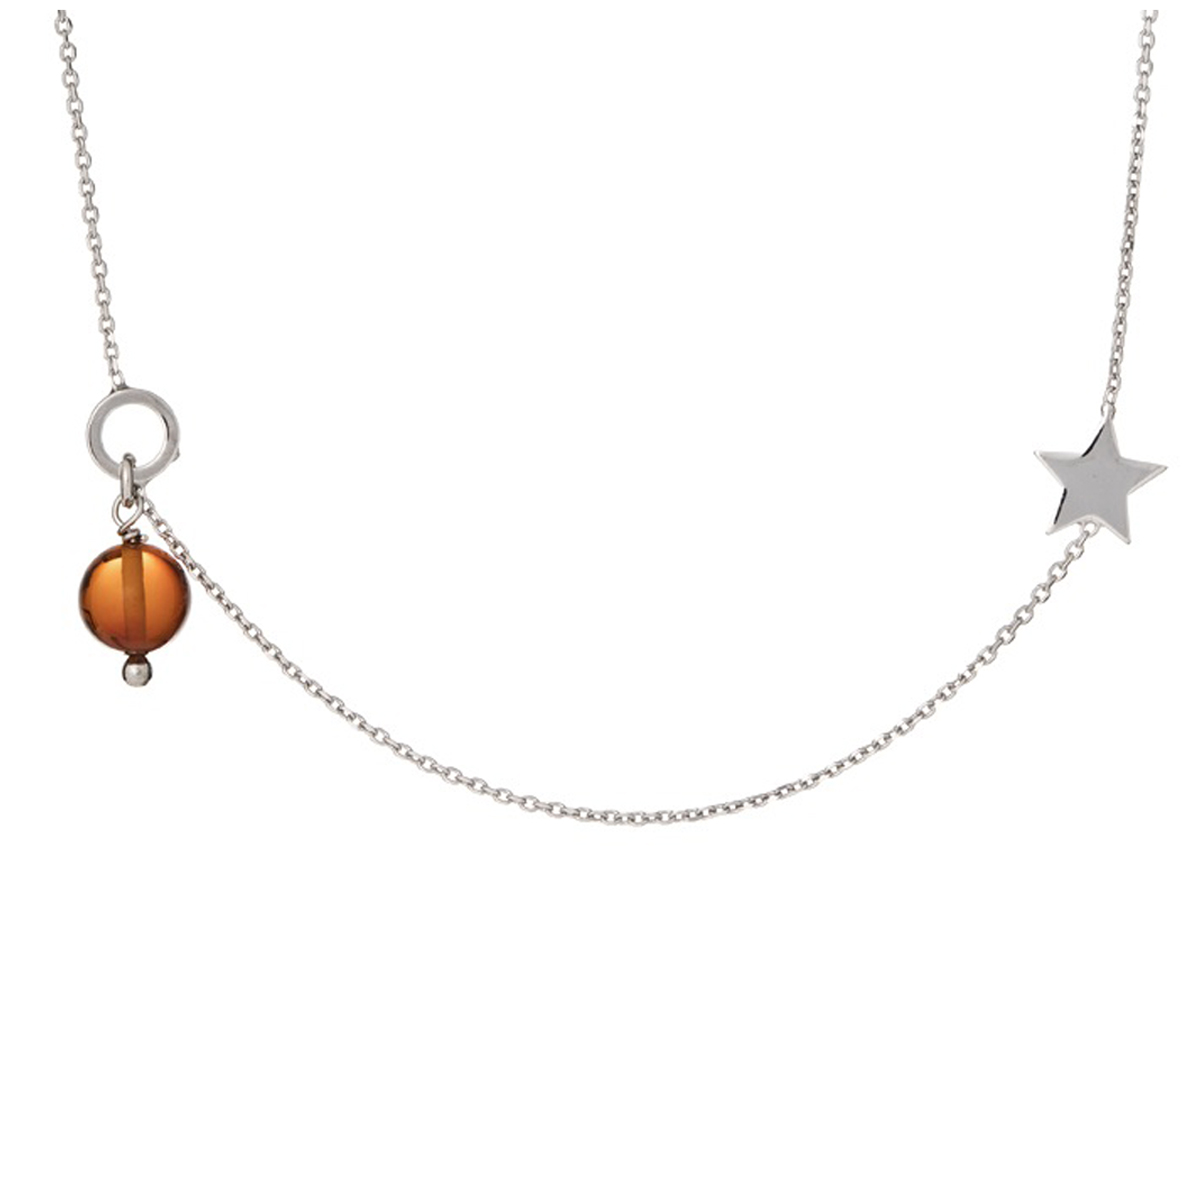 Collier argent artisanal \'Inspiration\' ambre cognac - étoile 7 mm, perle 5 mm - [R5546]